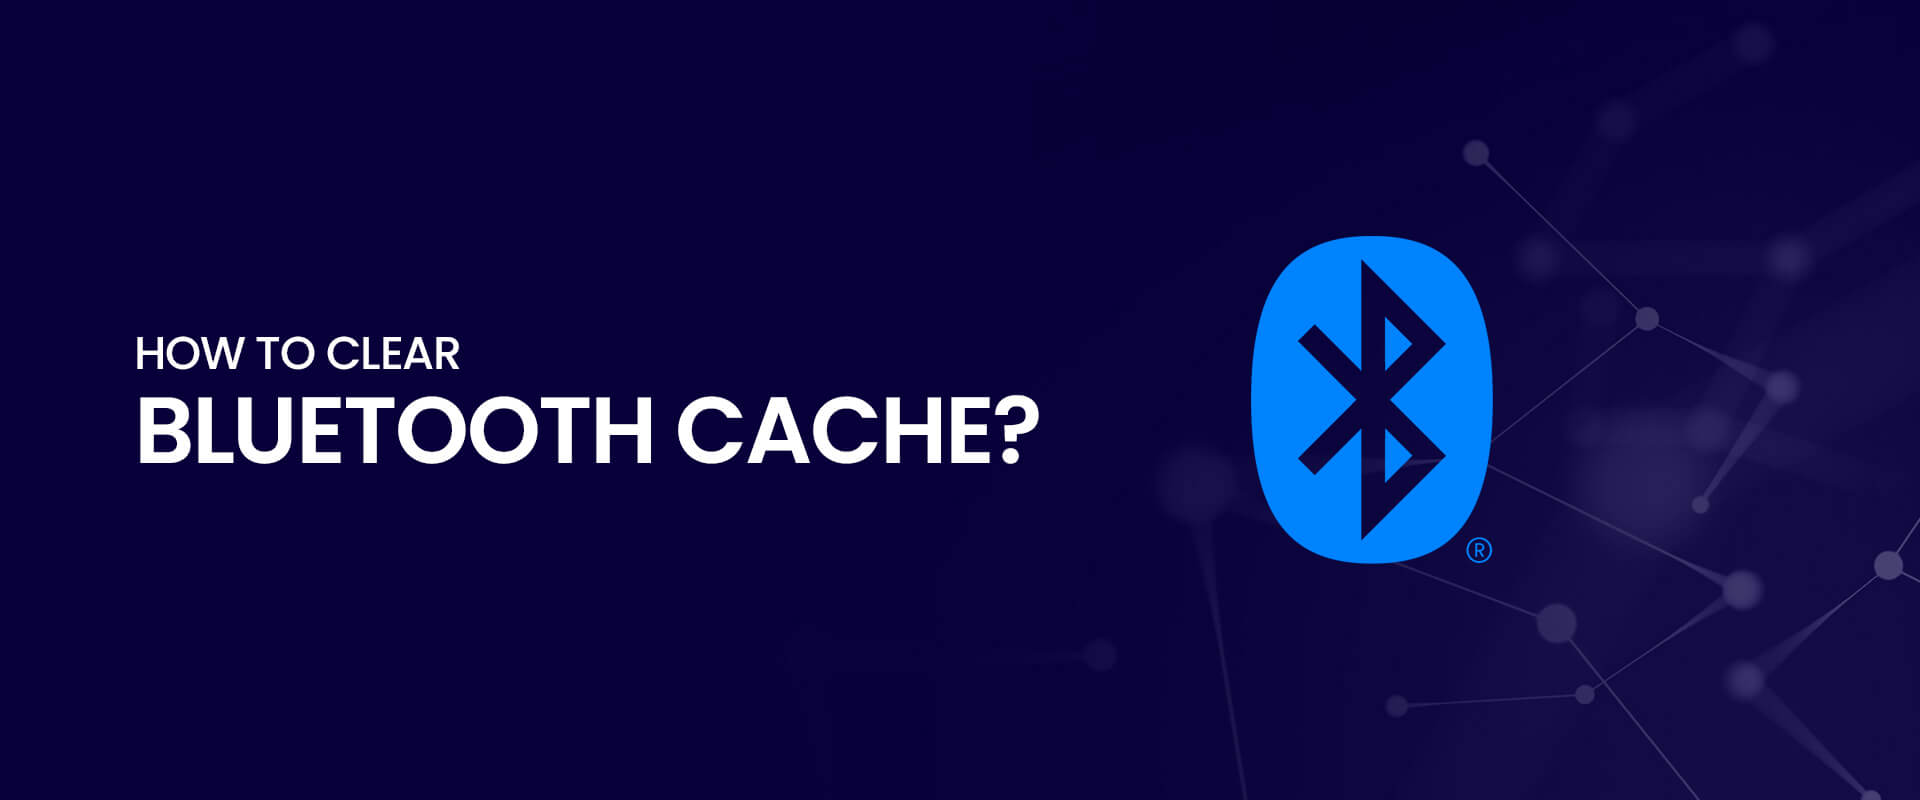 Limpe o cache: Limpe o cache do aplicativo Bluetooth em seu dispositivo Android para resolver possíveis problemas de conexão.
Tente esquecer e emparelhar novamente: Esqueça o dispositivo Bluetooth emparelhado no seu dispositivo Android e, em seguida, faça o processo de emparelhamento novamente.